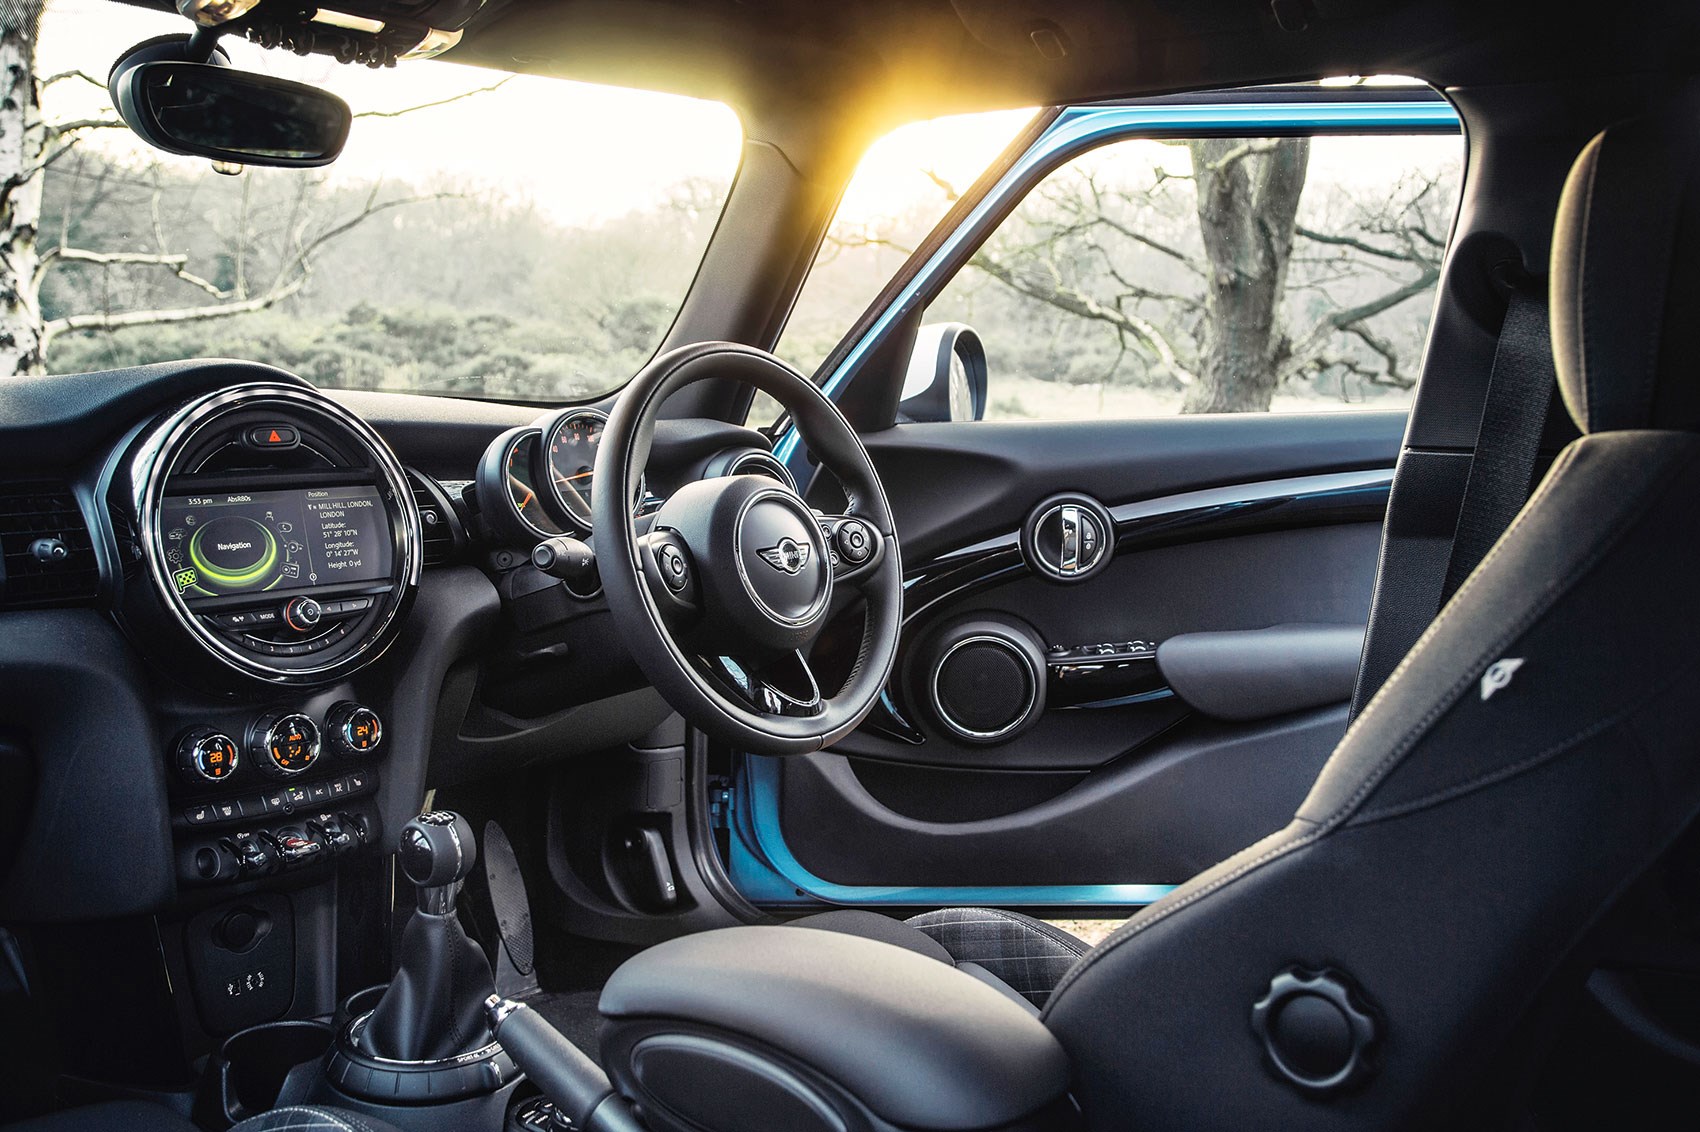 2015 MINI Cooper 5-Door and 3-Door - Rear